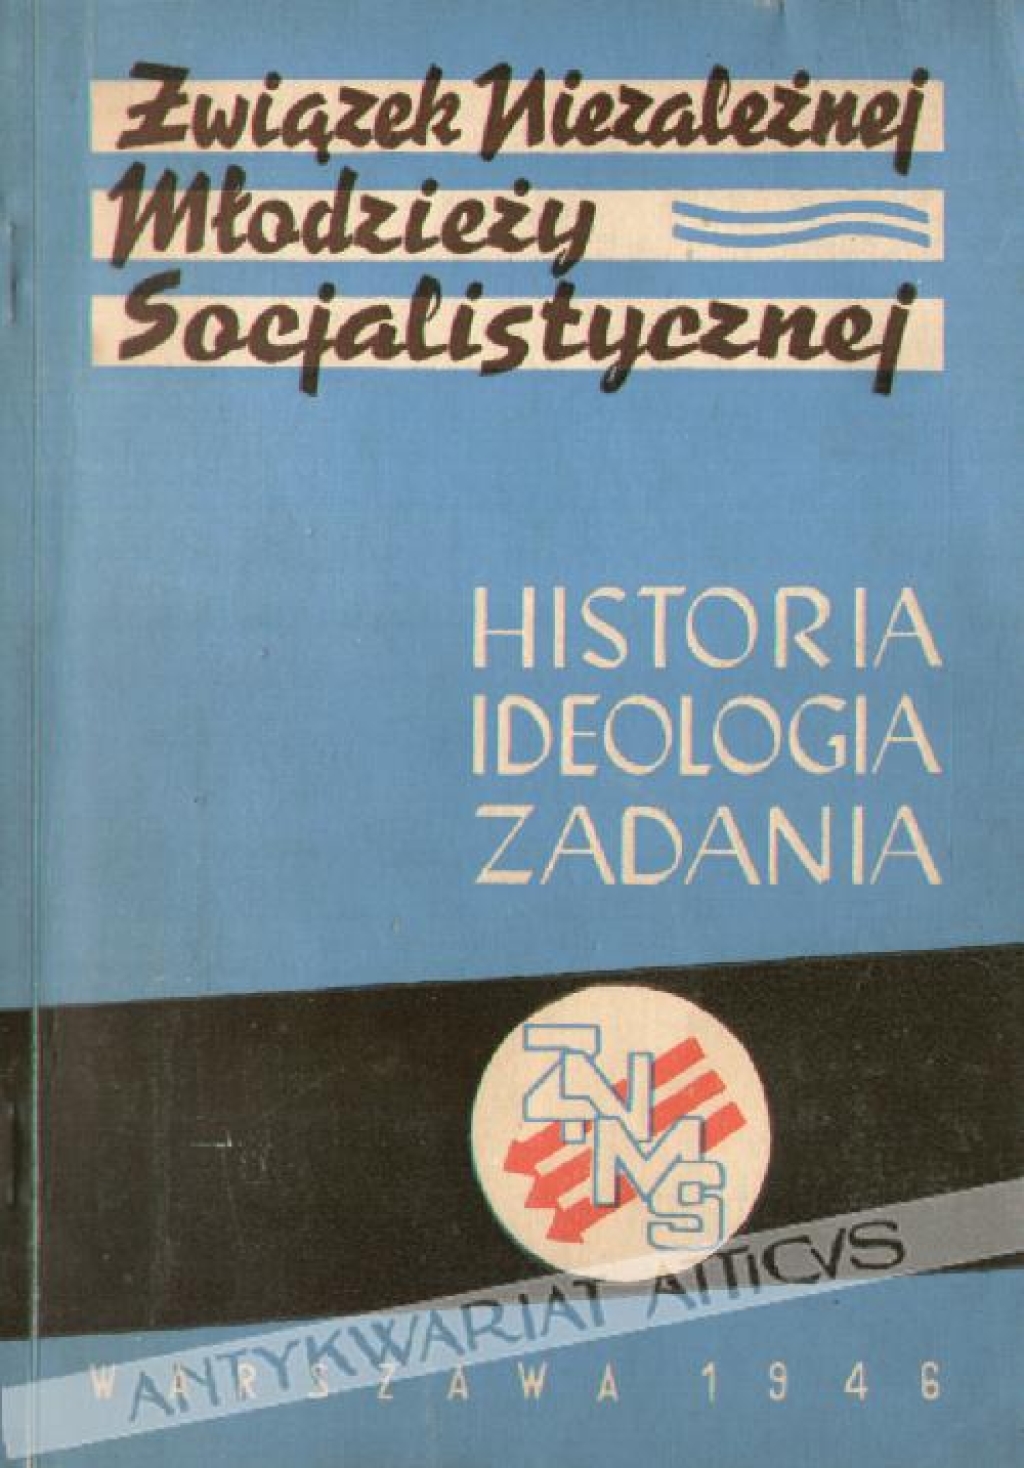 Związek Niezależnej Młodzieży Socjalistycznej (Akademickiej). Historia - ideologia - zadania